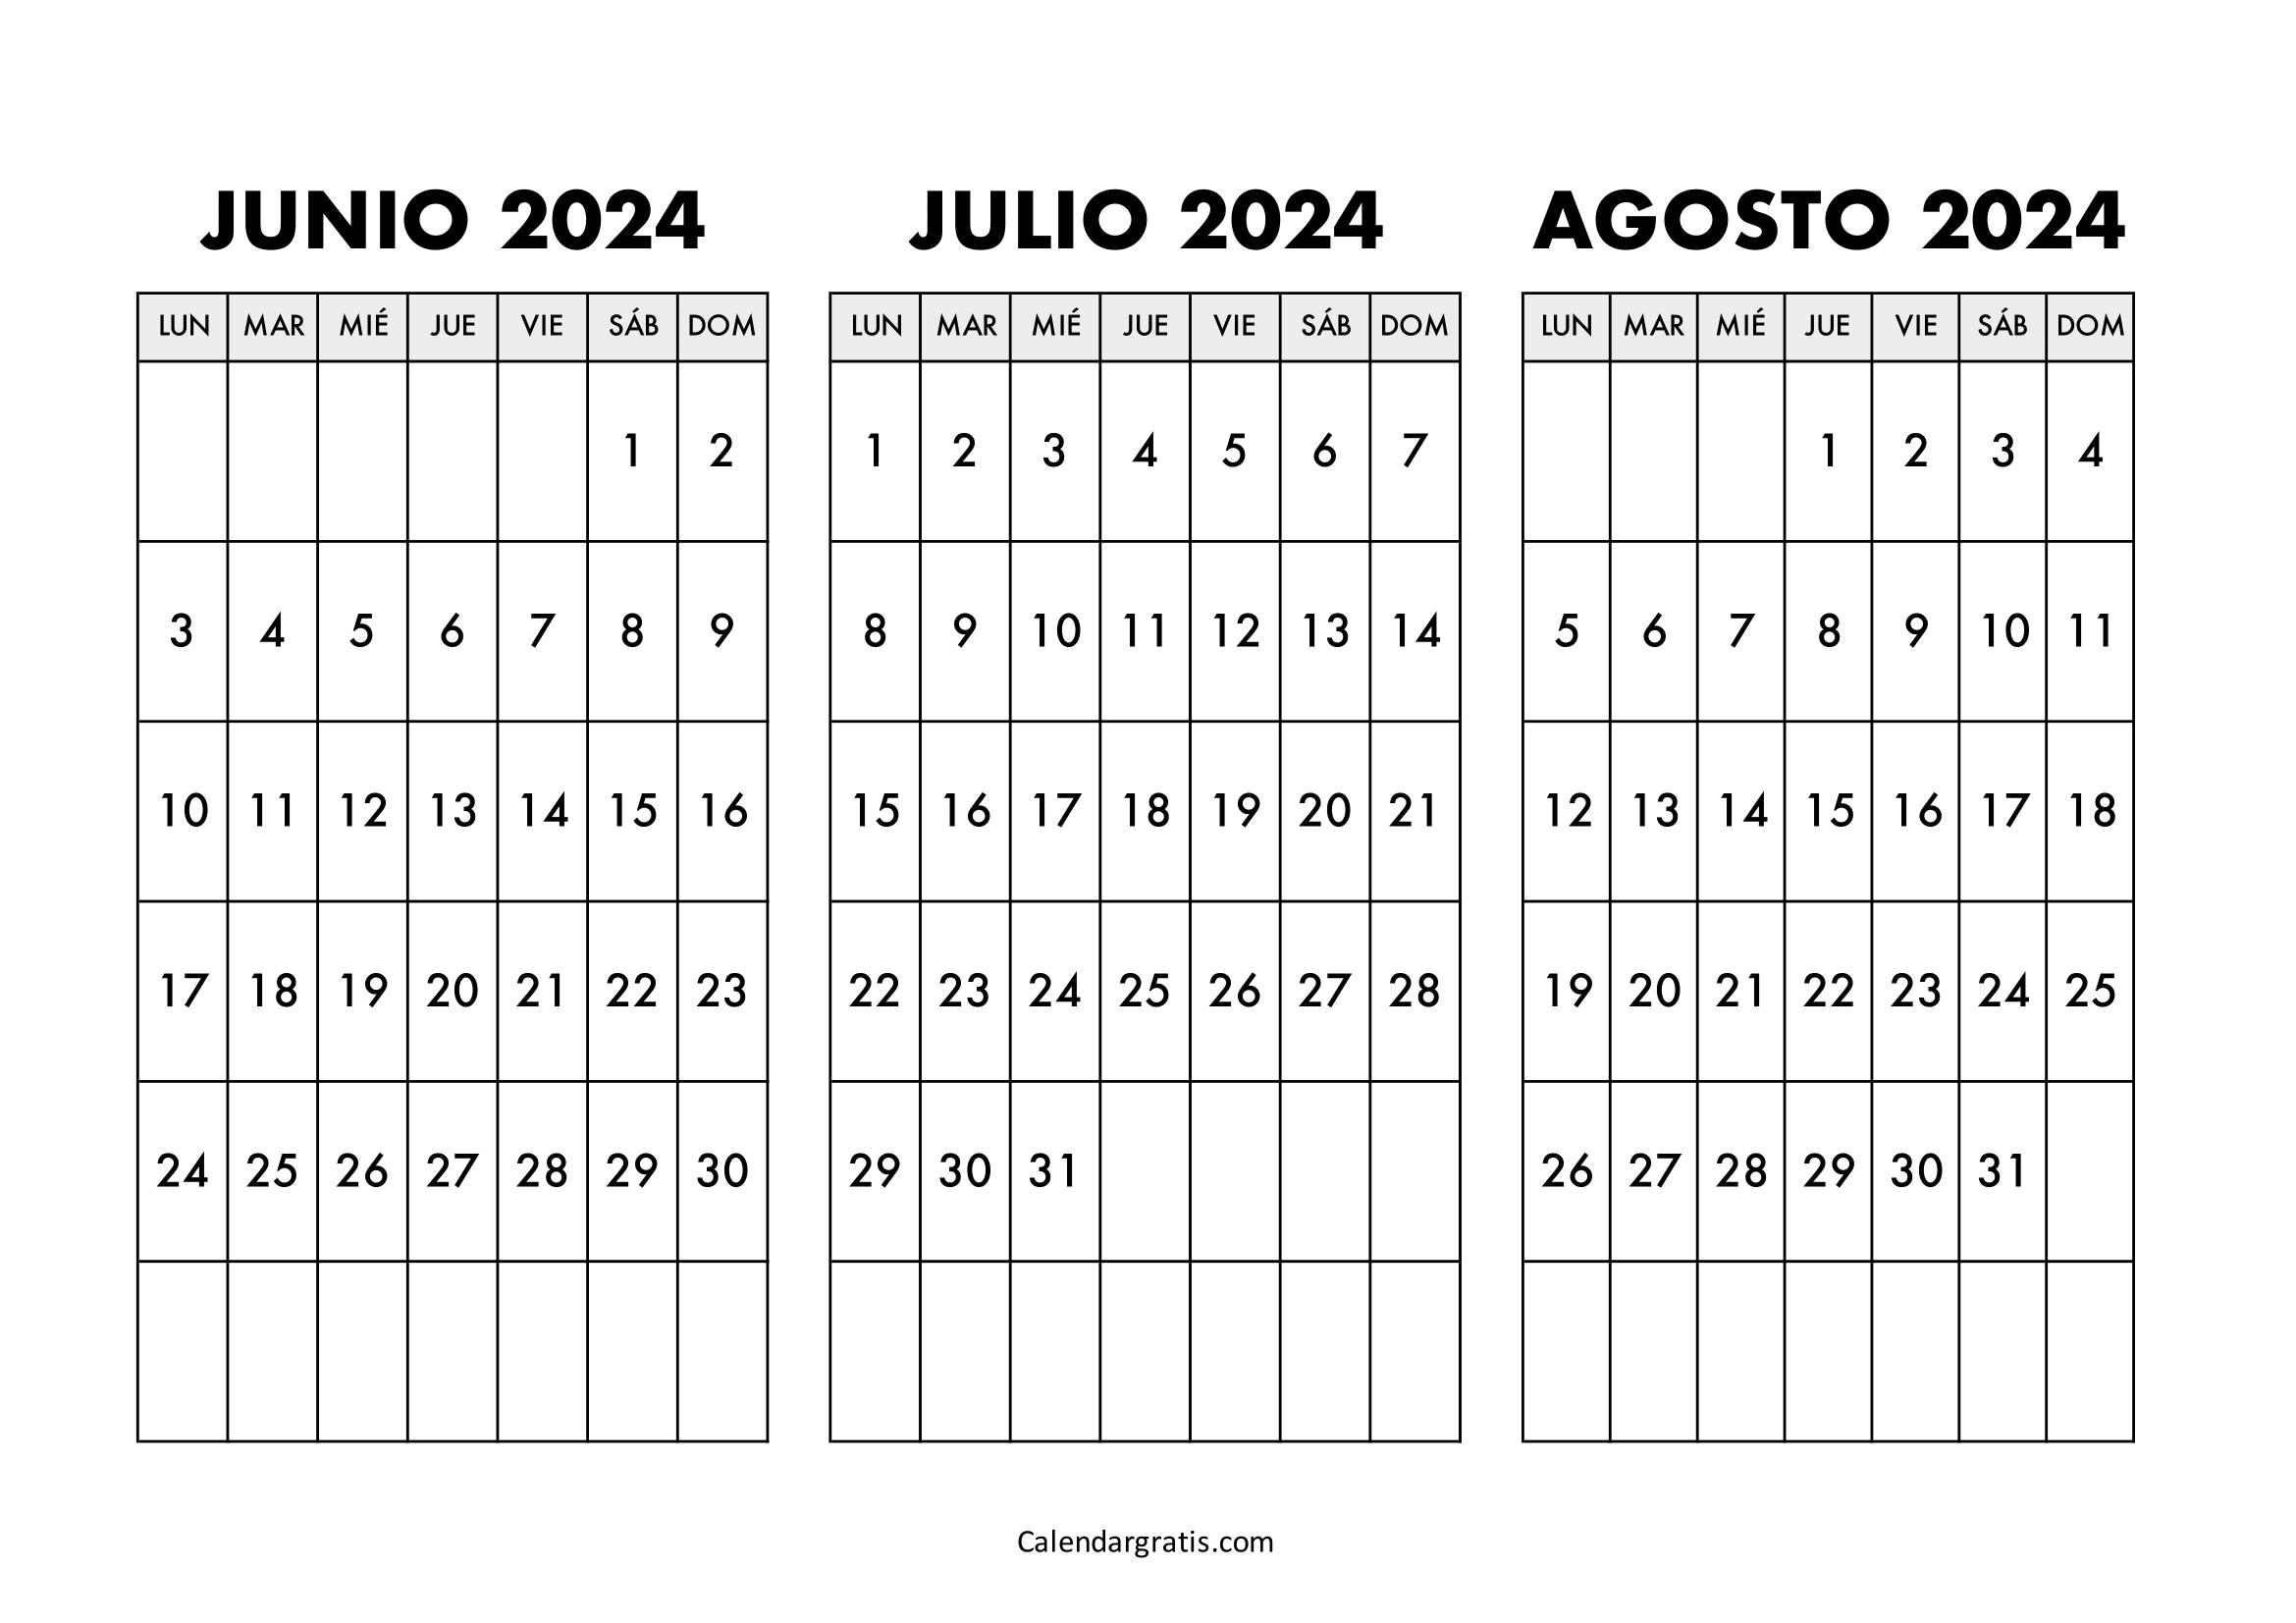 Calendario junio julio y agosto 2024 para imprimir